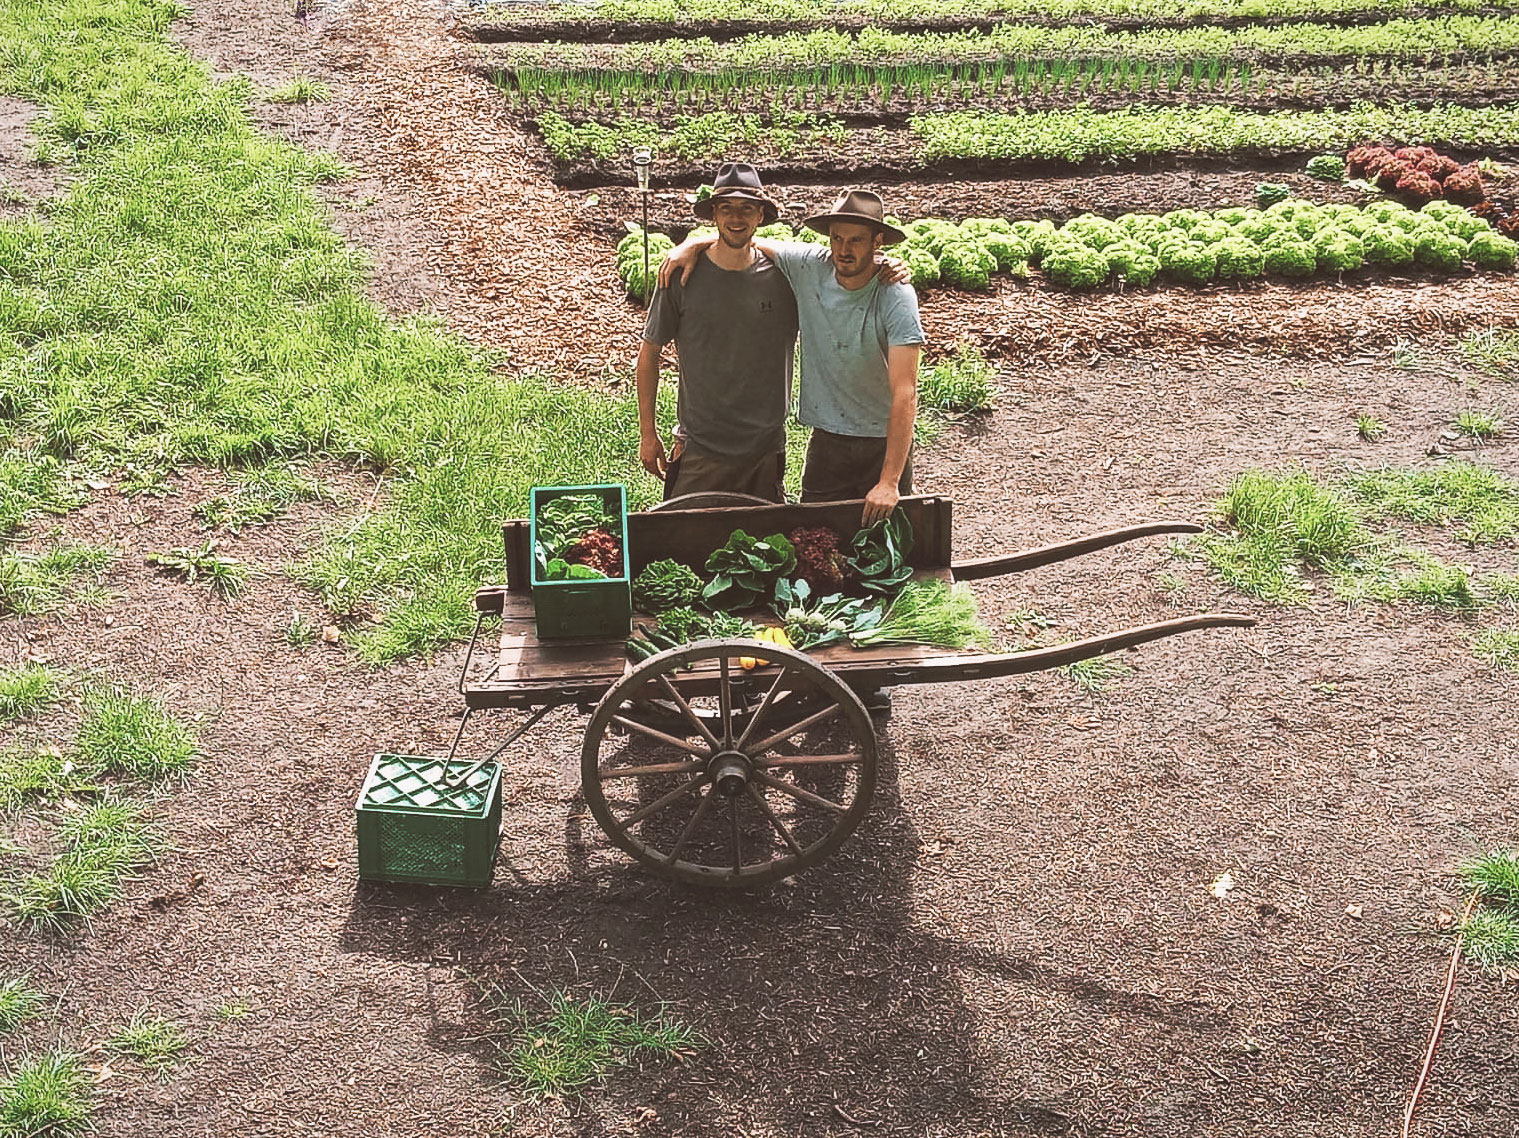 Die beiden Gründer der Humuswerkstatt (Marius Frey und Lukas Worth) präsentieren stolz auf ihrem Gemüsebetrieb ihre Biokiste auf einem alten Karren